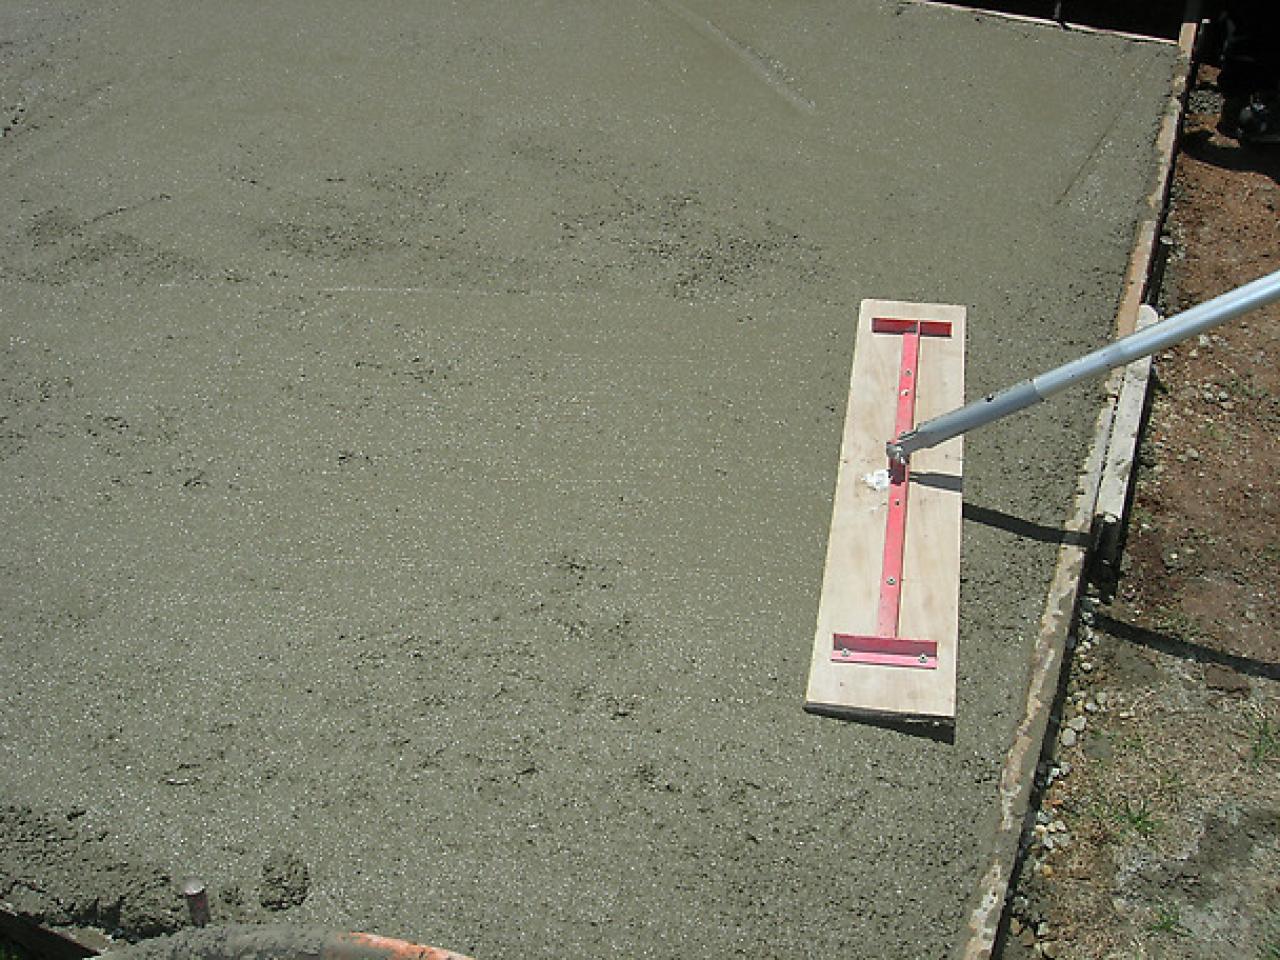 How To Build A Slate Patio Tos Diy, Concrete Tiles Outdoor Diy